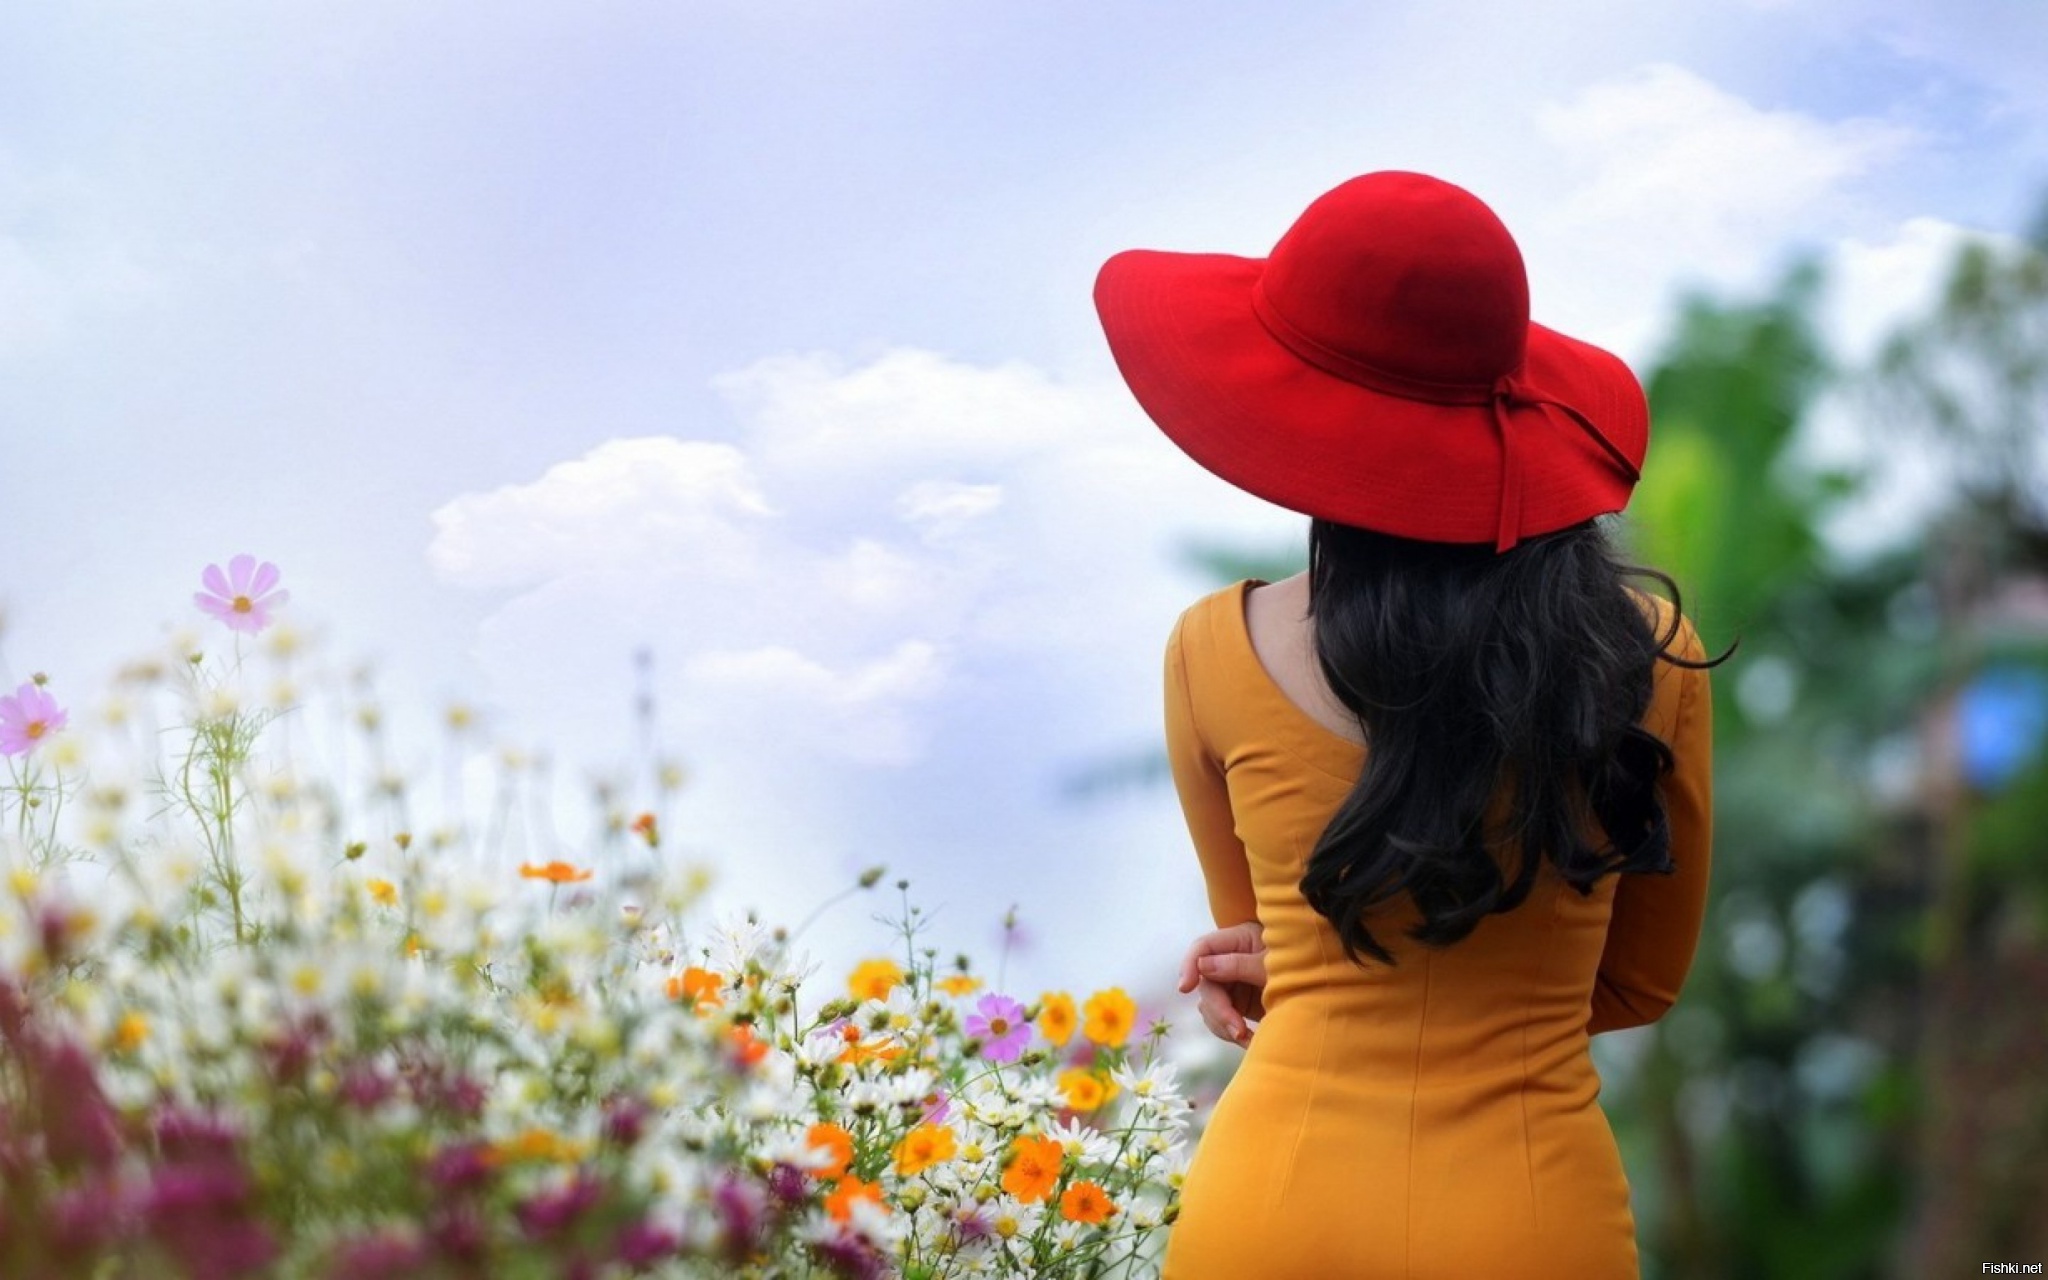 Картинки на ватсап красивые. Женщина в шляпе со спины. Девушка в шляпе сзади. Цветы и девушка со спины. Красивые женщины в шляпах со спины летом.